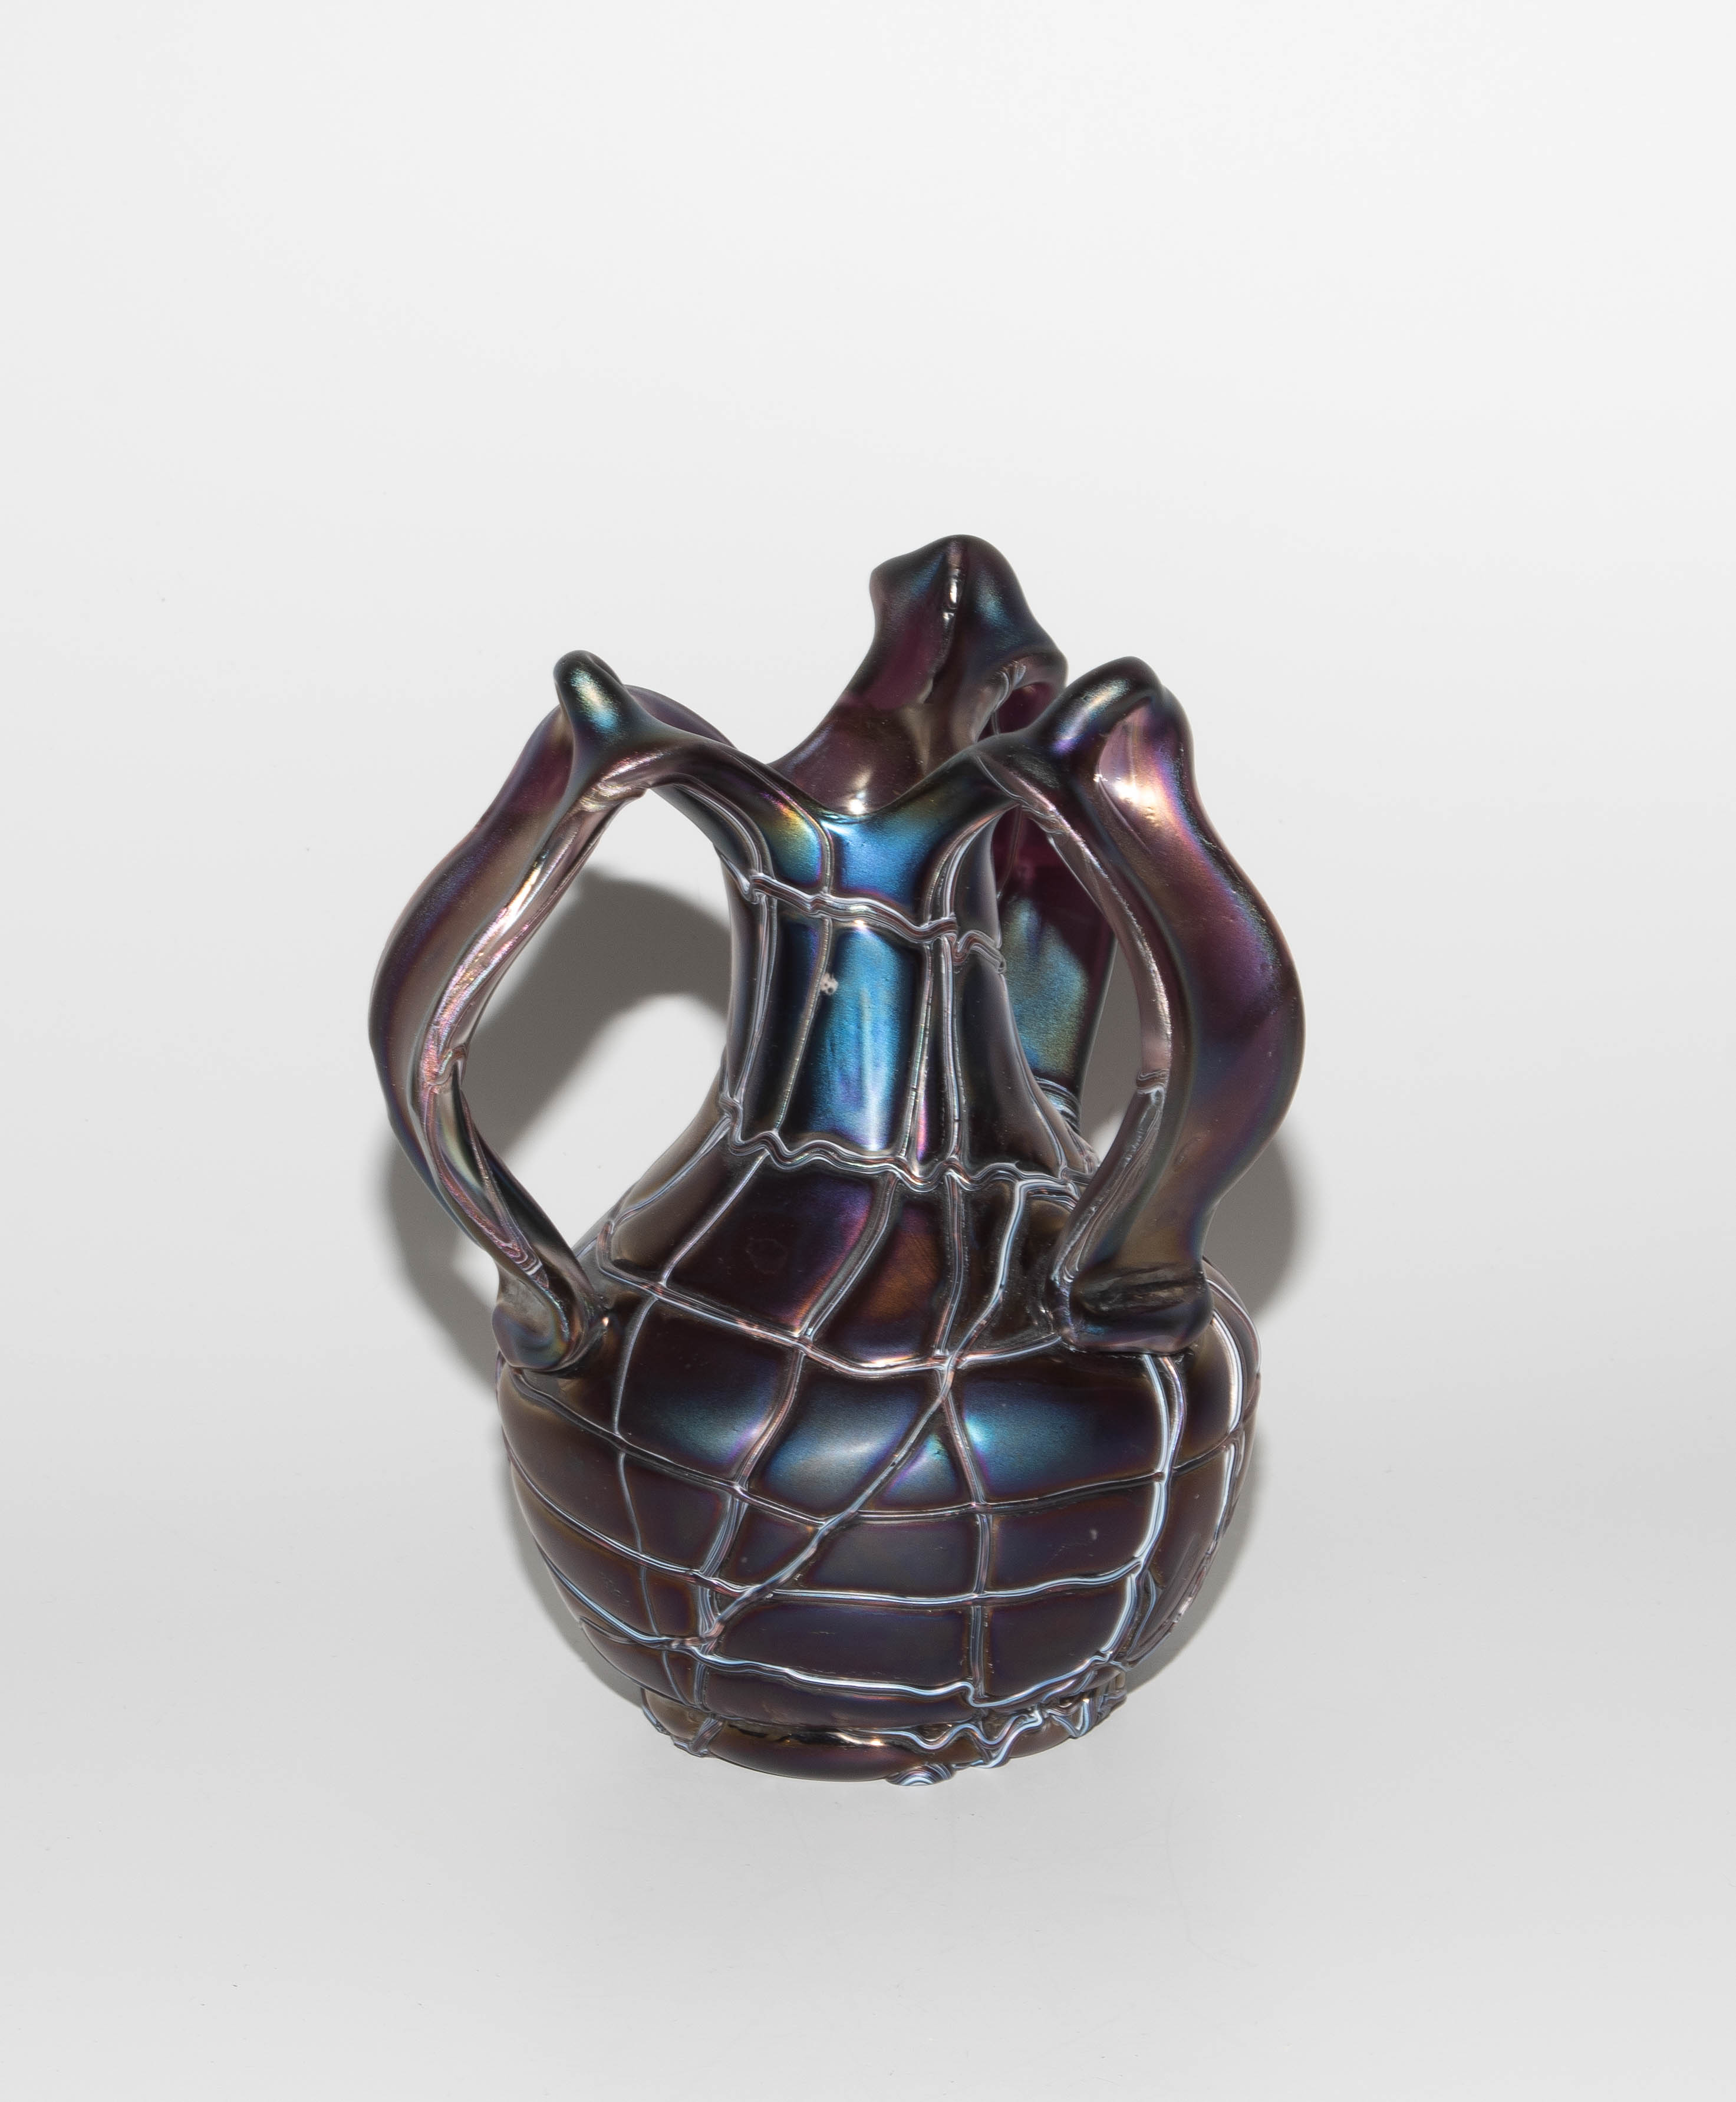 Pallme-König & Habel (zugeschrieben), Vase "Patras" - Image 5 of 7